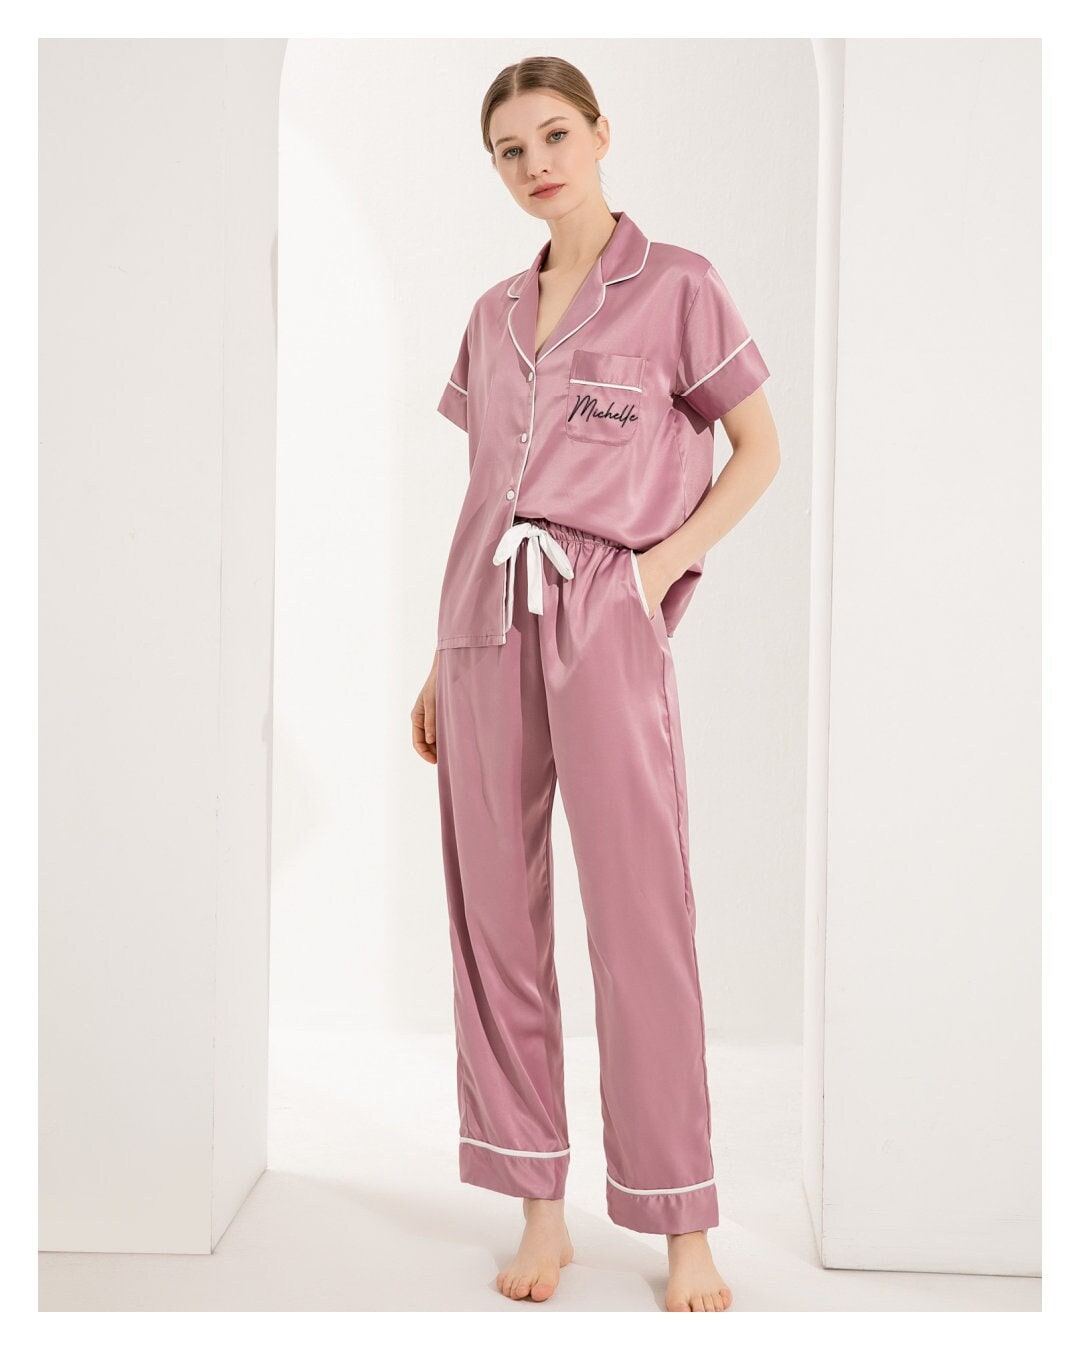 Personalized Tie-dye Pajamas, Tiedye Pjs, Comfortable Women's PJ Sets 